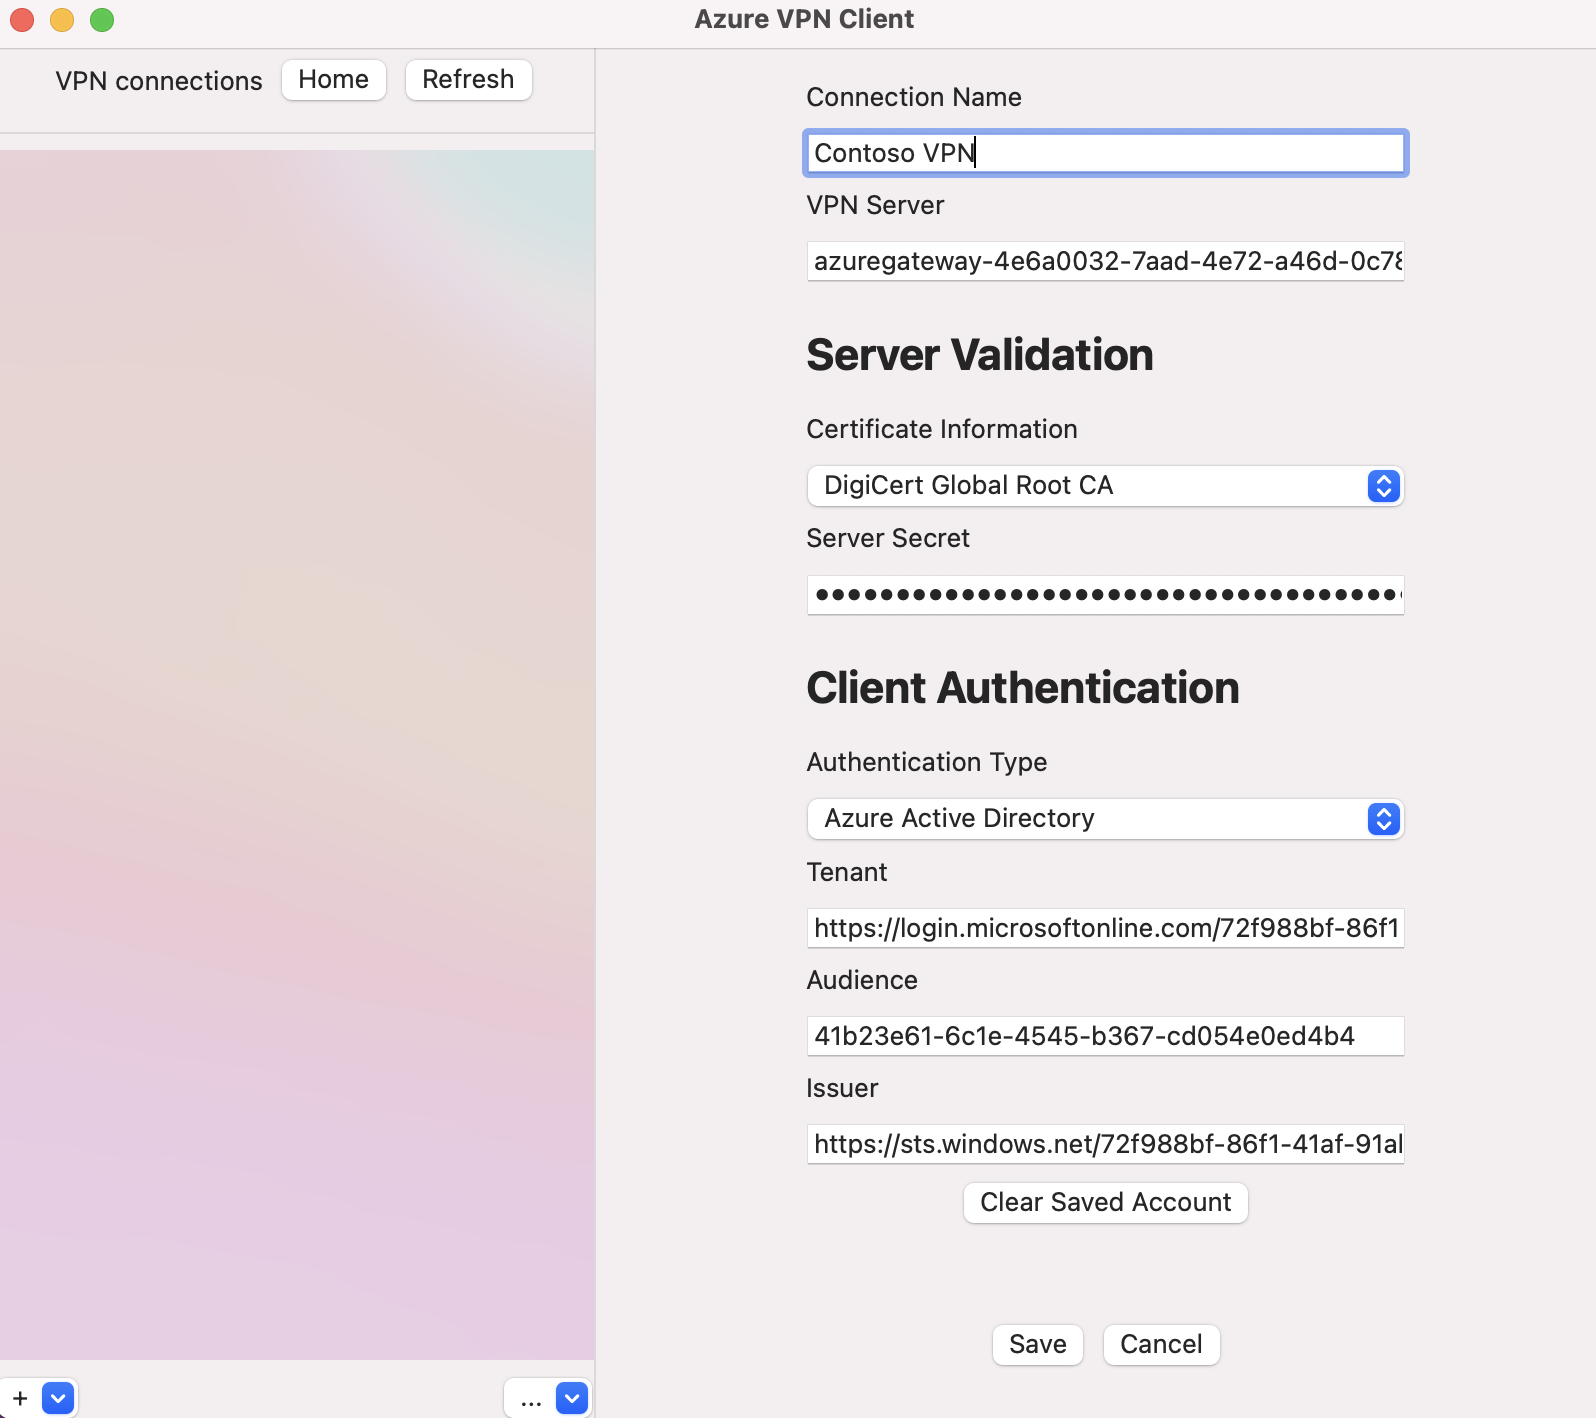 لقطة شاشة لإعدادات ملف تعريف عميل Azure VPN.